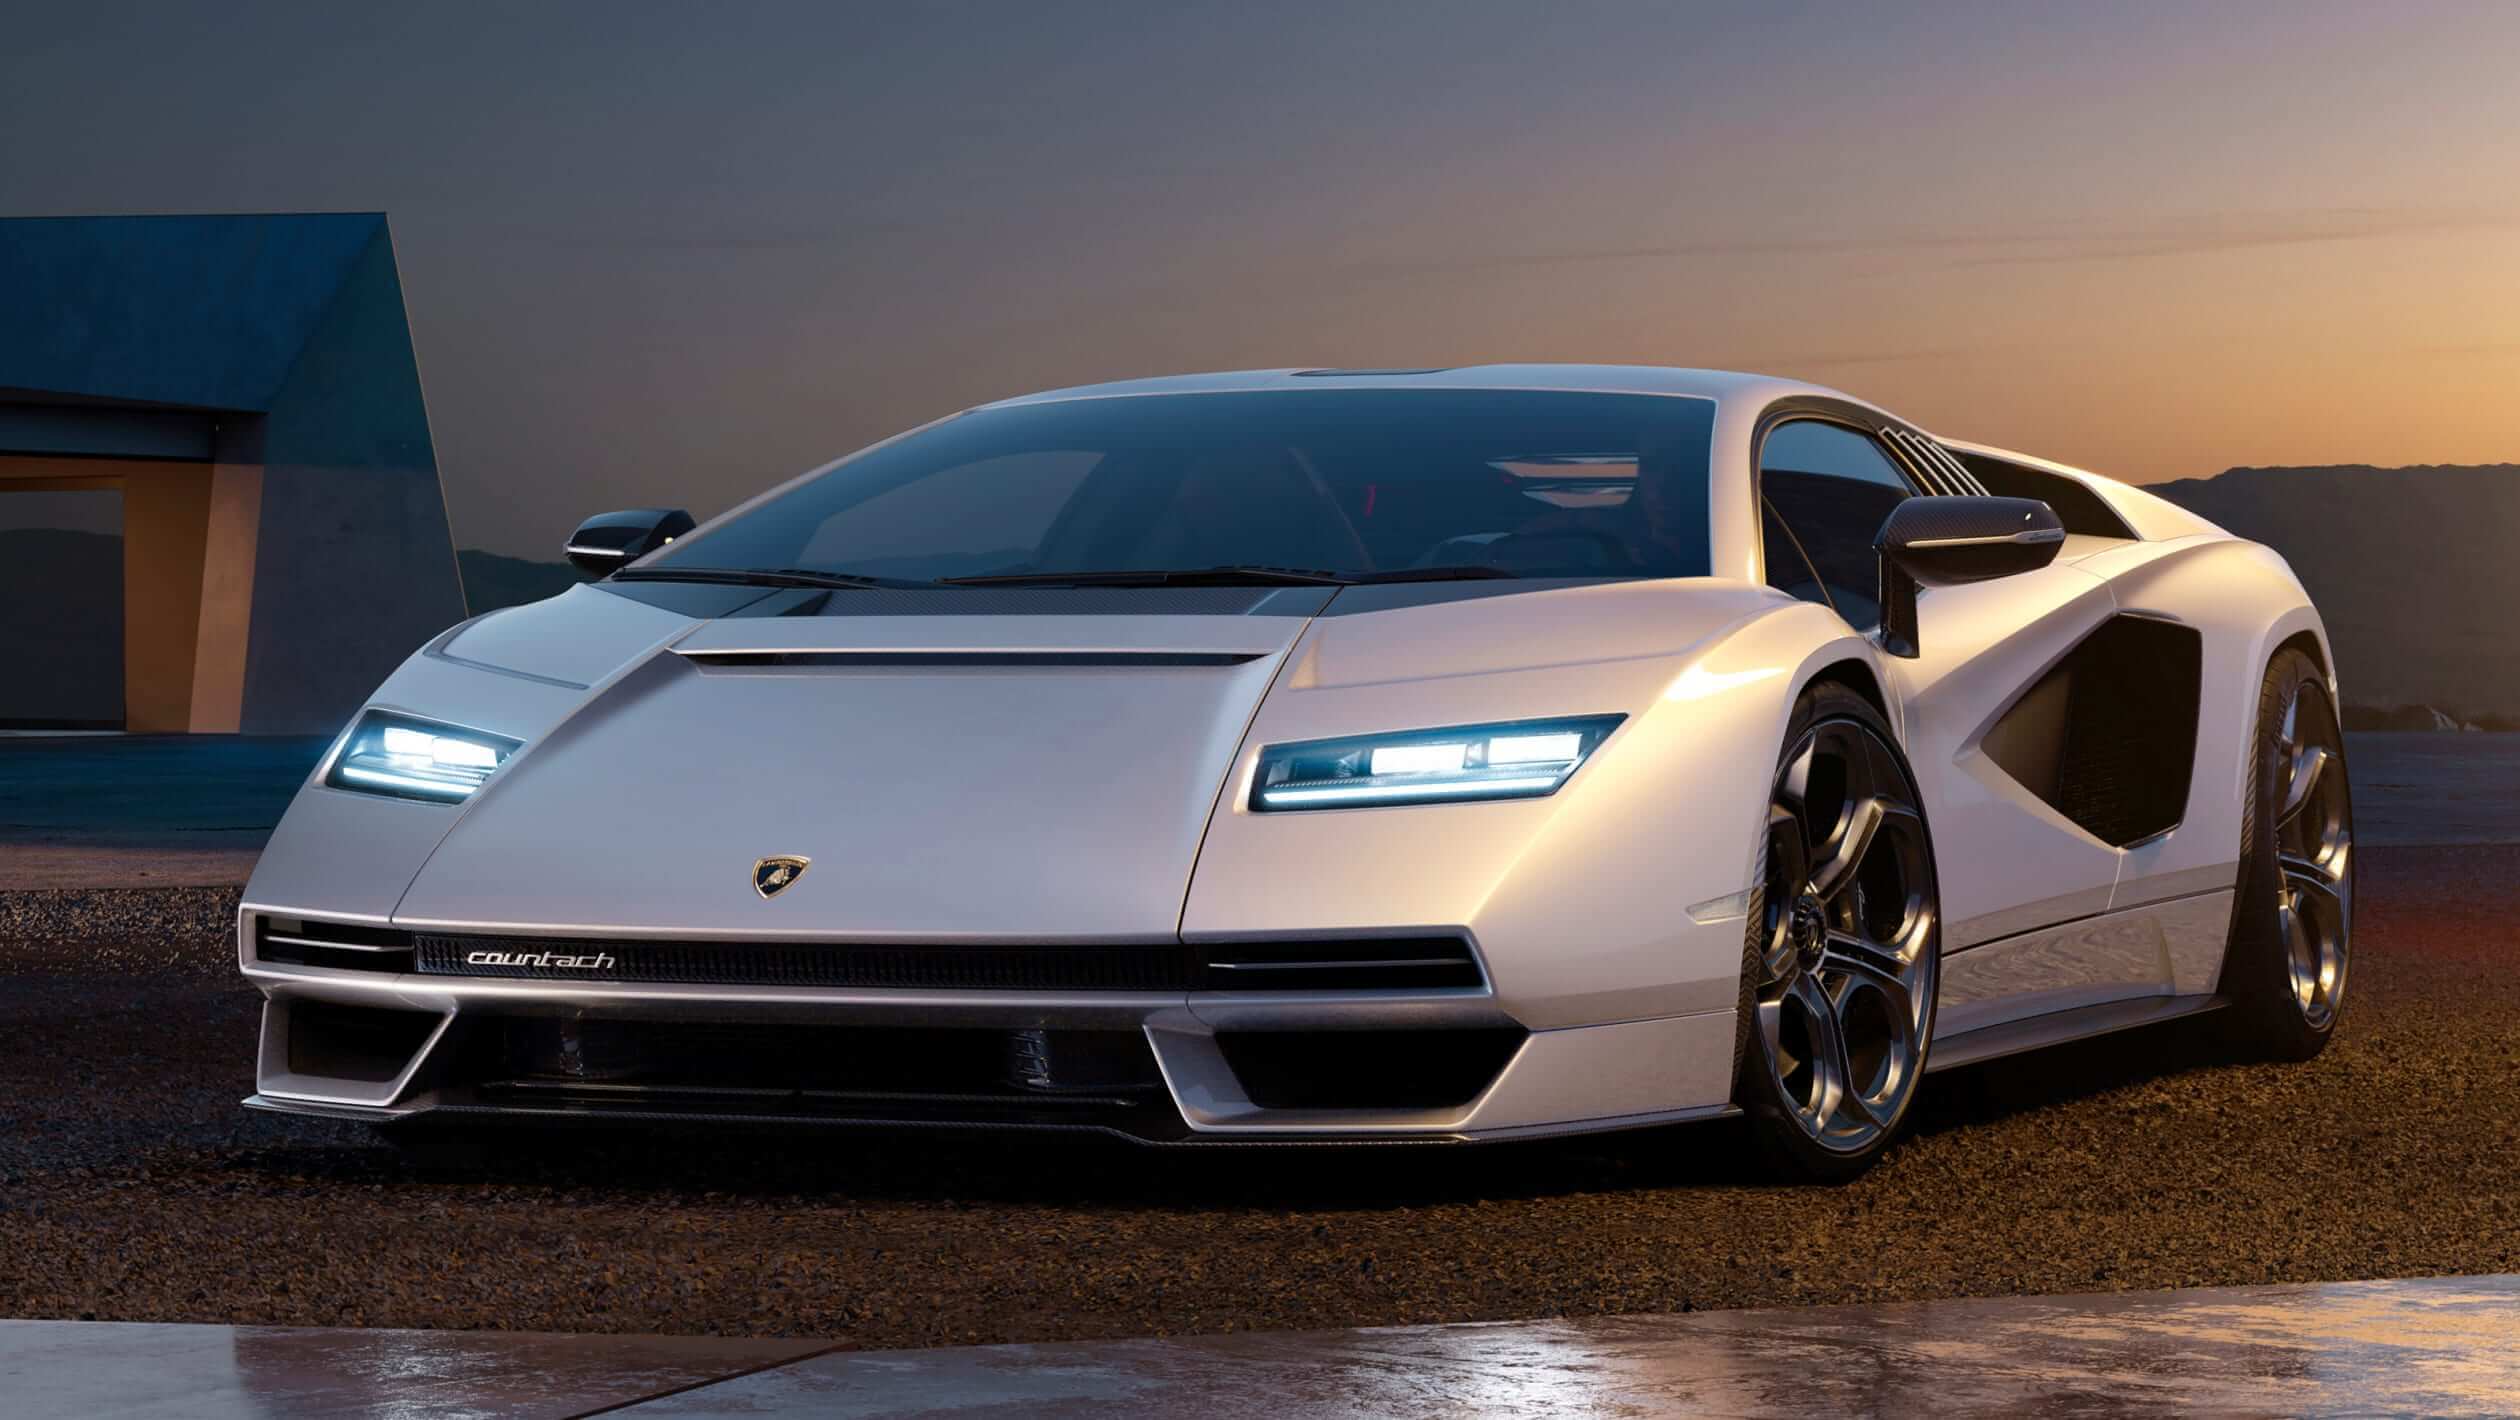 Lamborghini remake classic Countach model for 2022